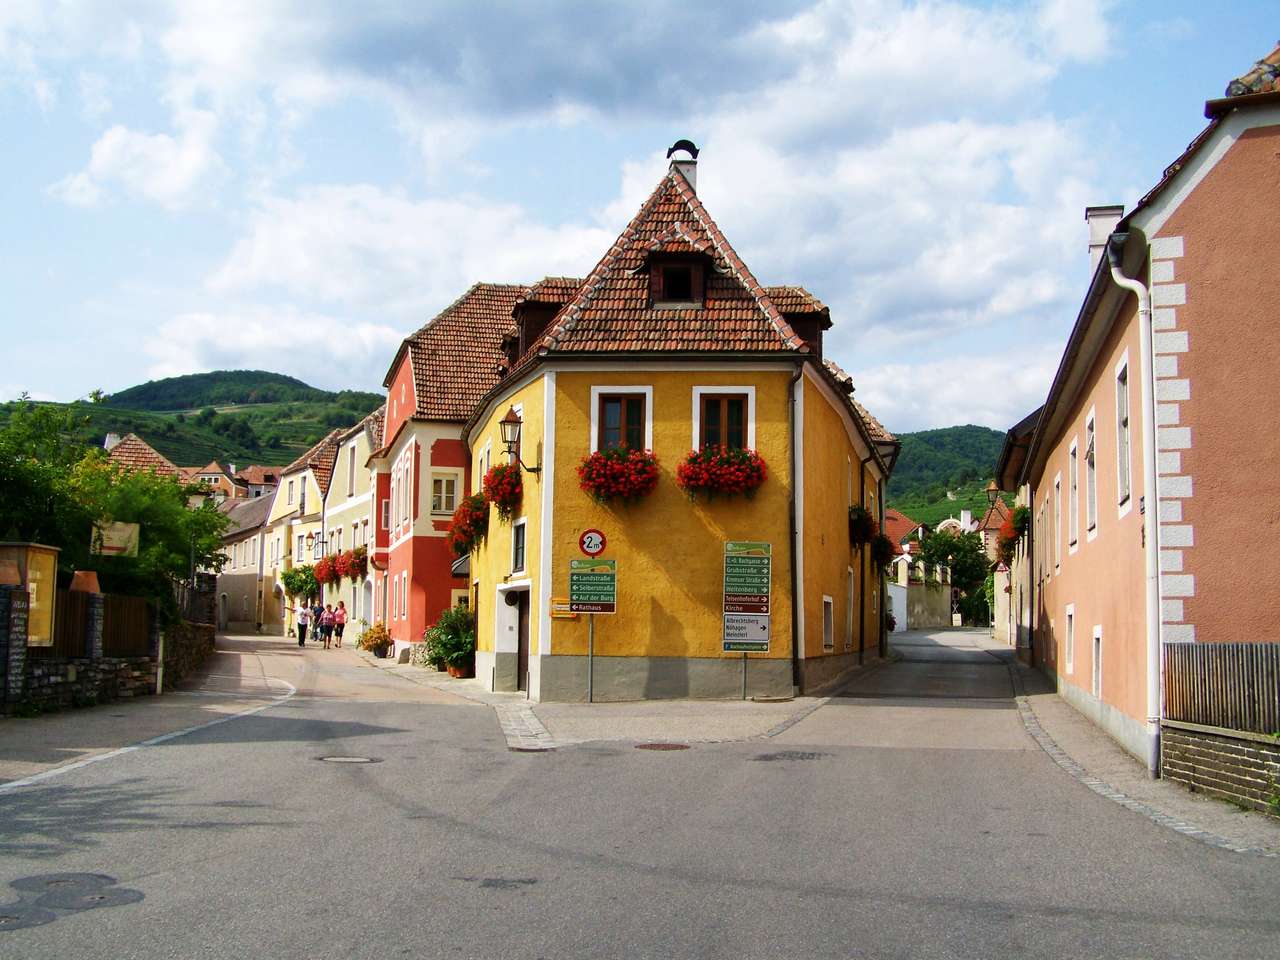 Weißenkirchen in der Wachau пазл онлайн